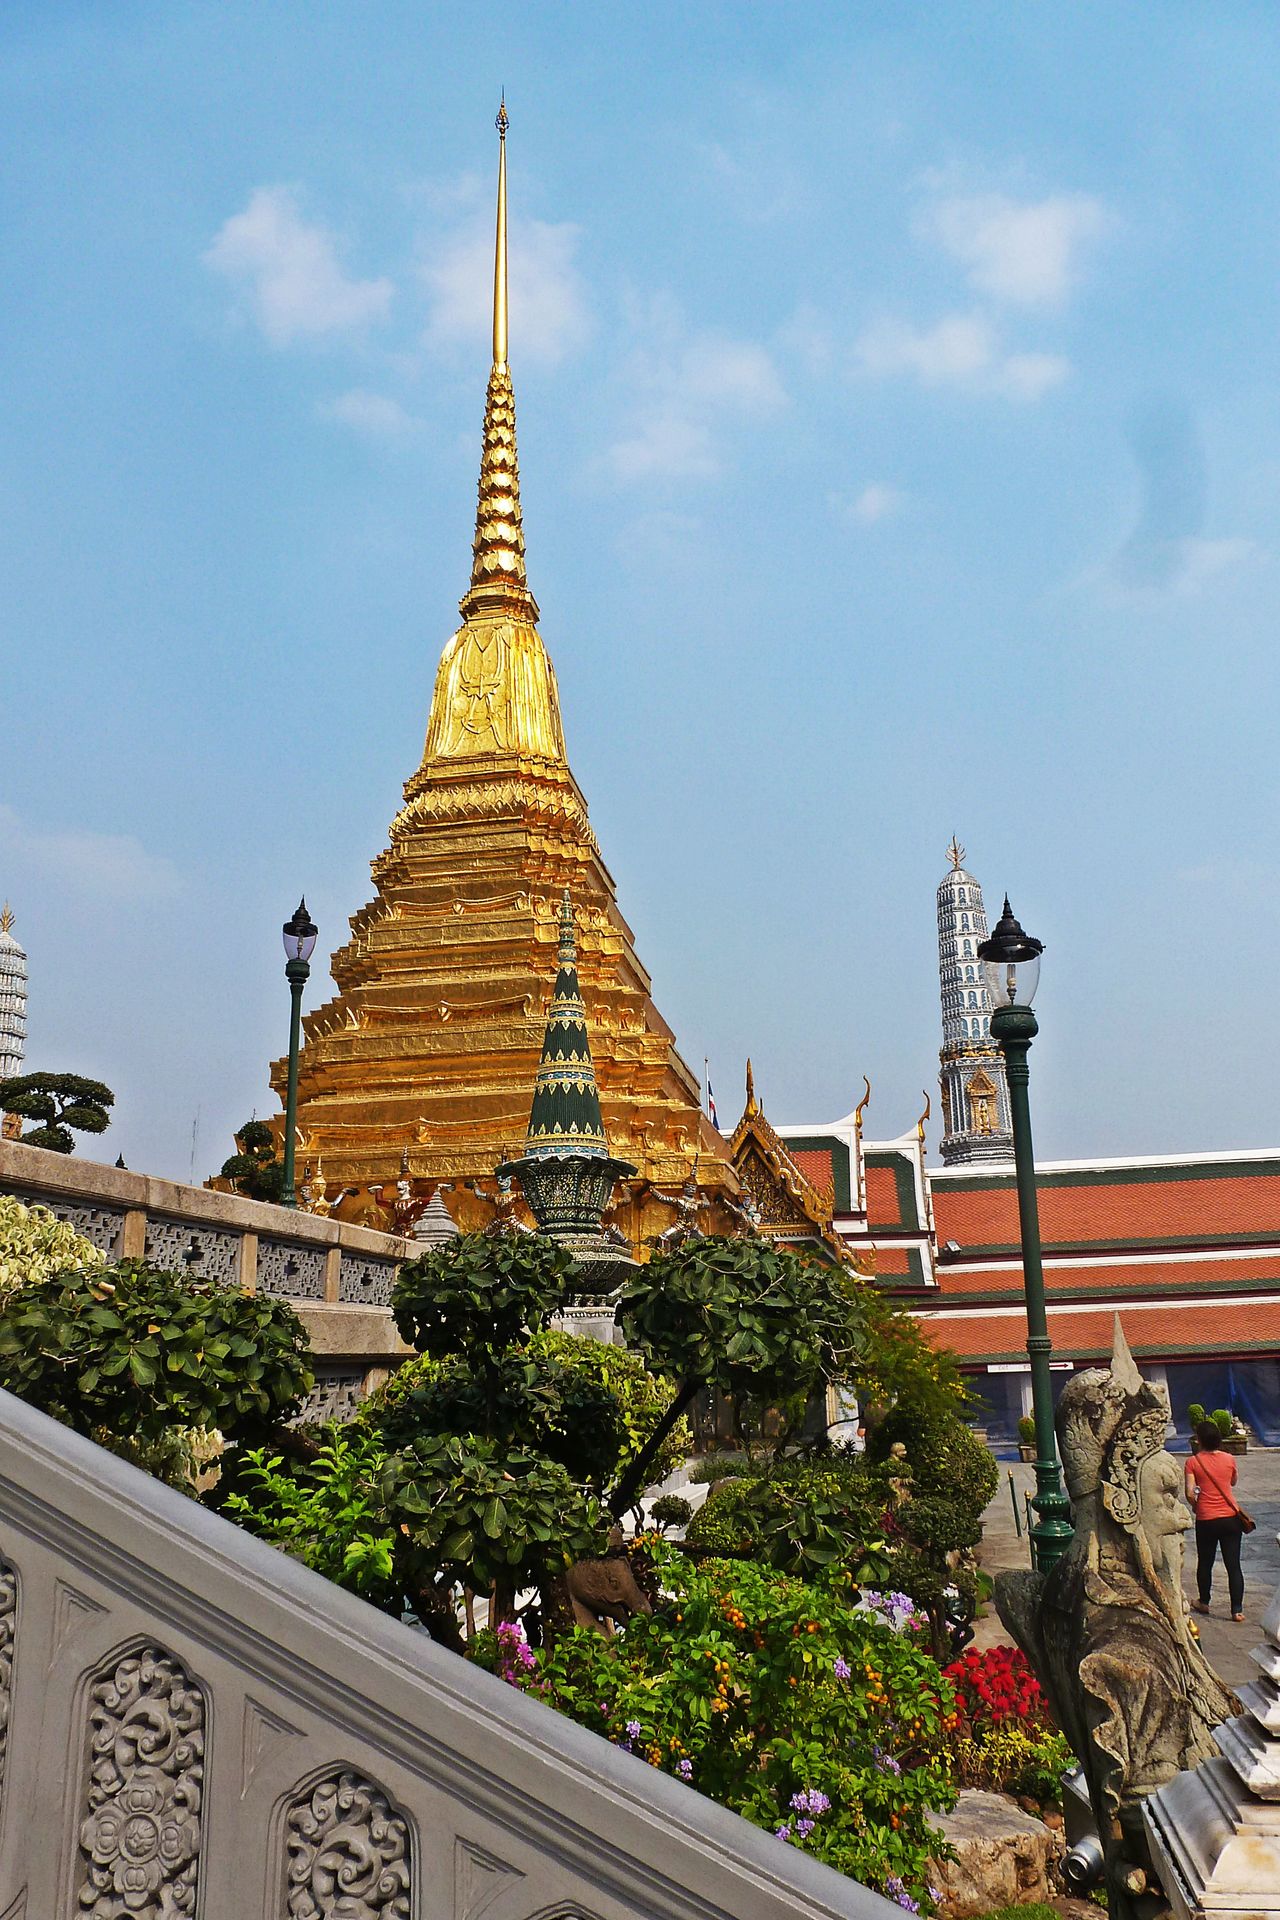 Bangkok palace